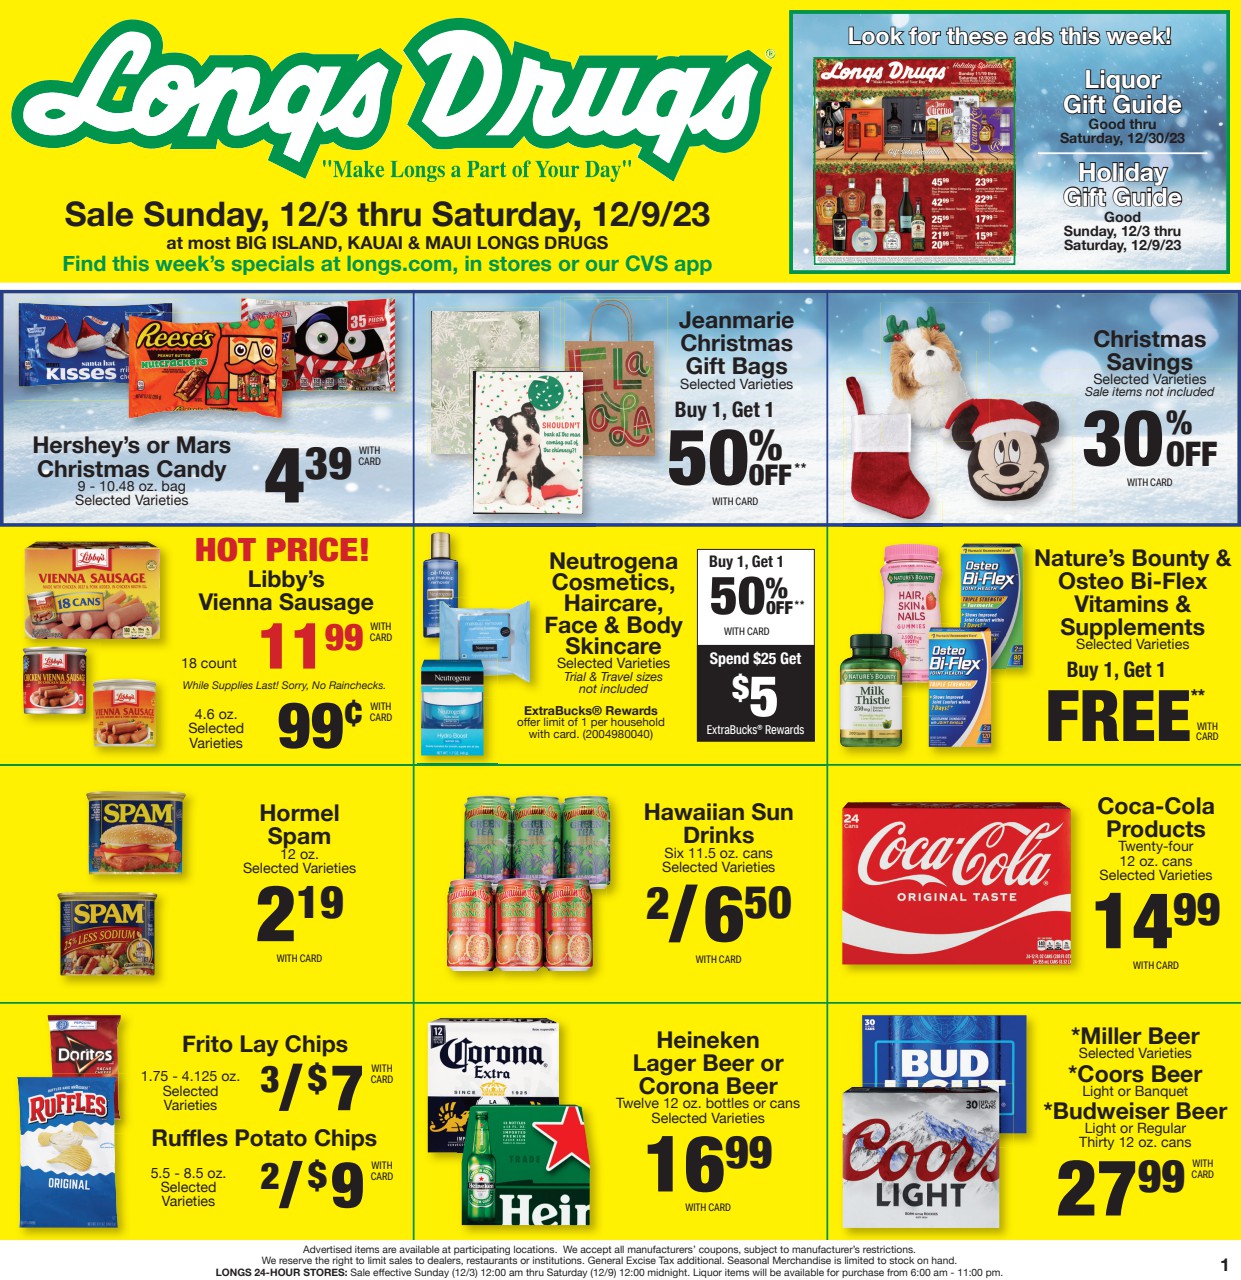 Kauai Longs Ad Image files/page/1.jpg